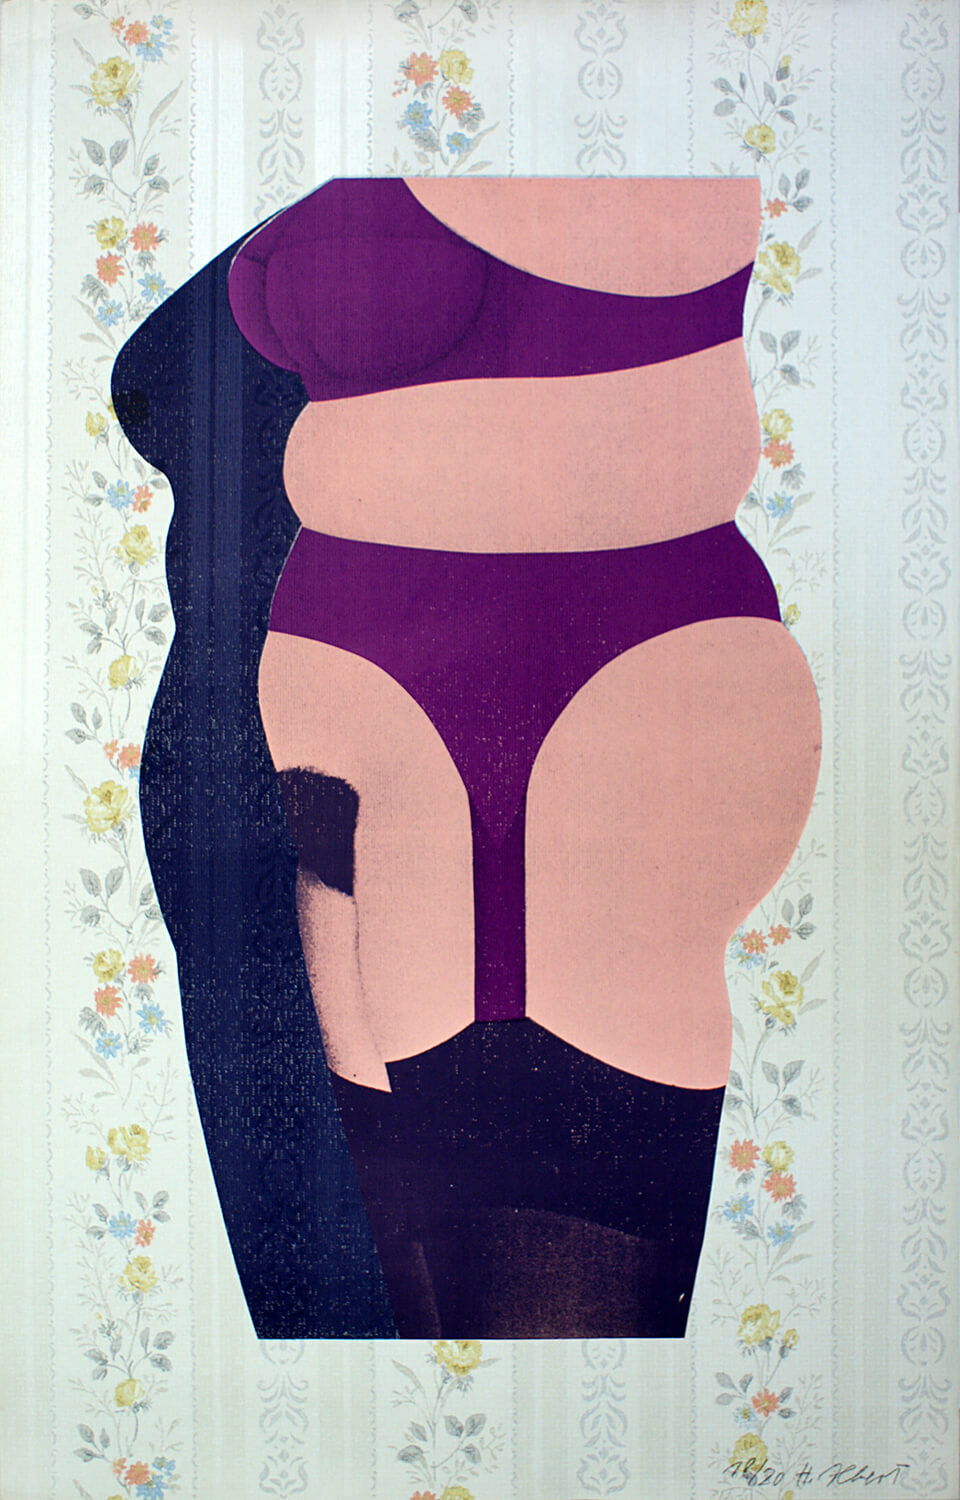 Hermann Albert, Frau, 1970, Siebdruck auf Tapete, Auflage: 20, 84 x 53 cm